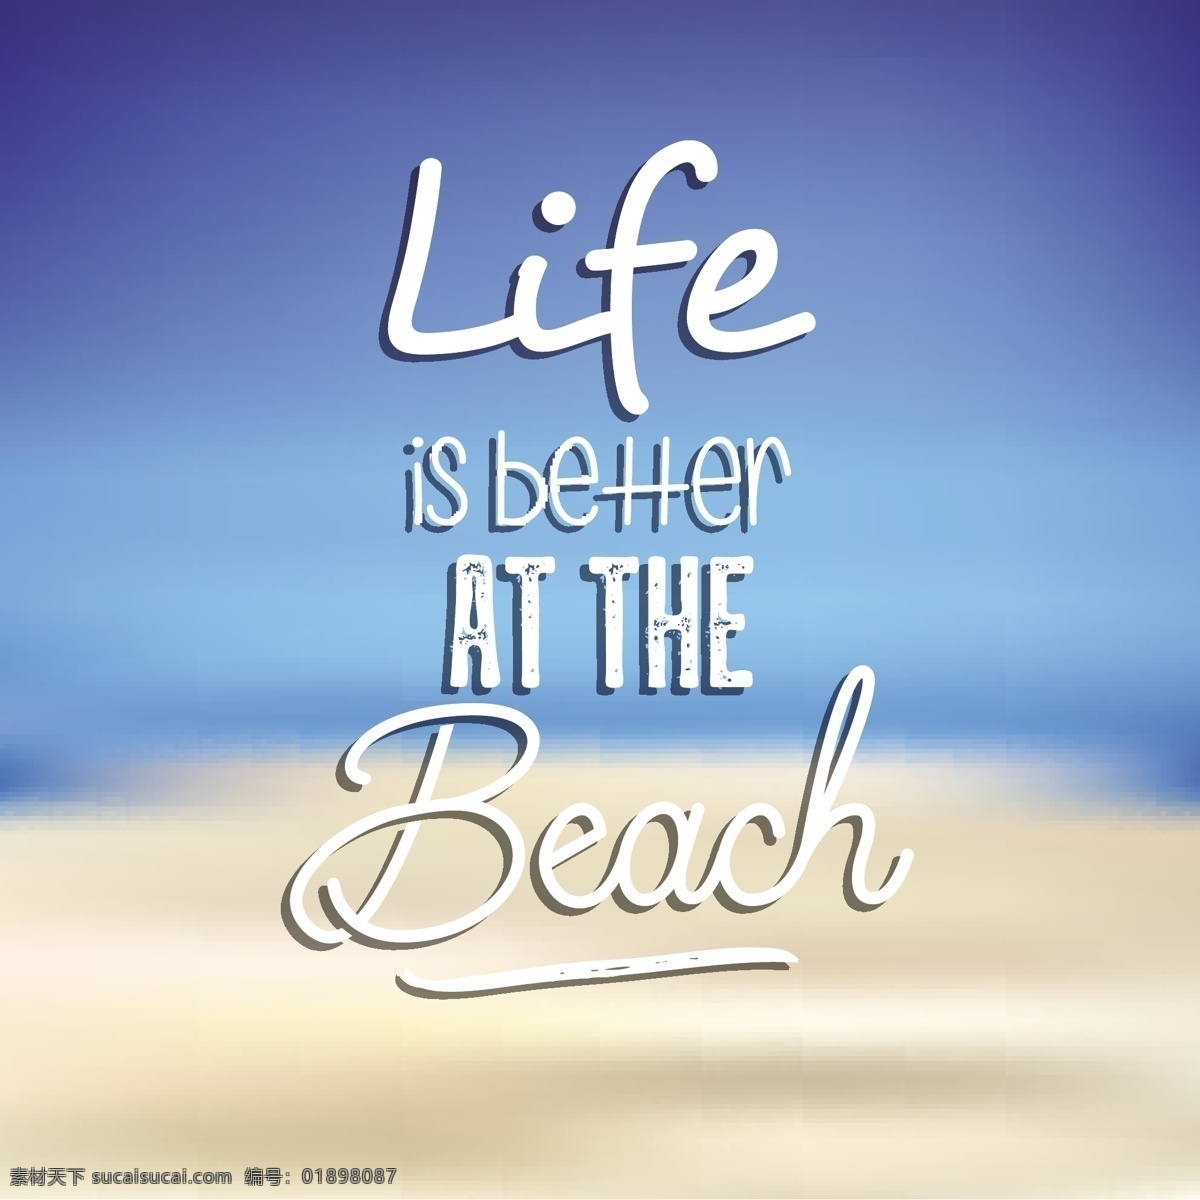 夏日 背景 沙滩 报价 夏季 海滩 天空 排版 字体 文字 热带 创意 假期 留言 沙子 动机 日出 阳光 季节 类型 书法